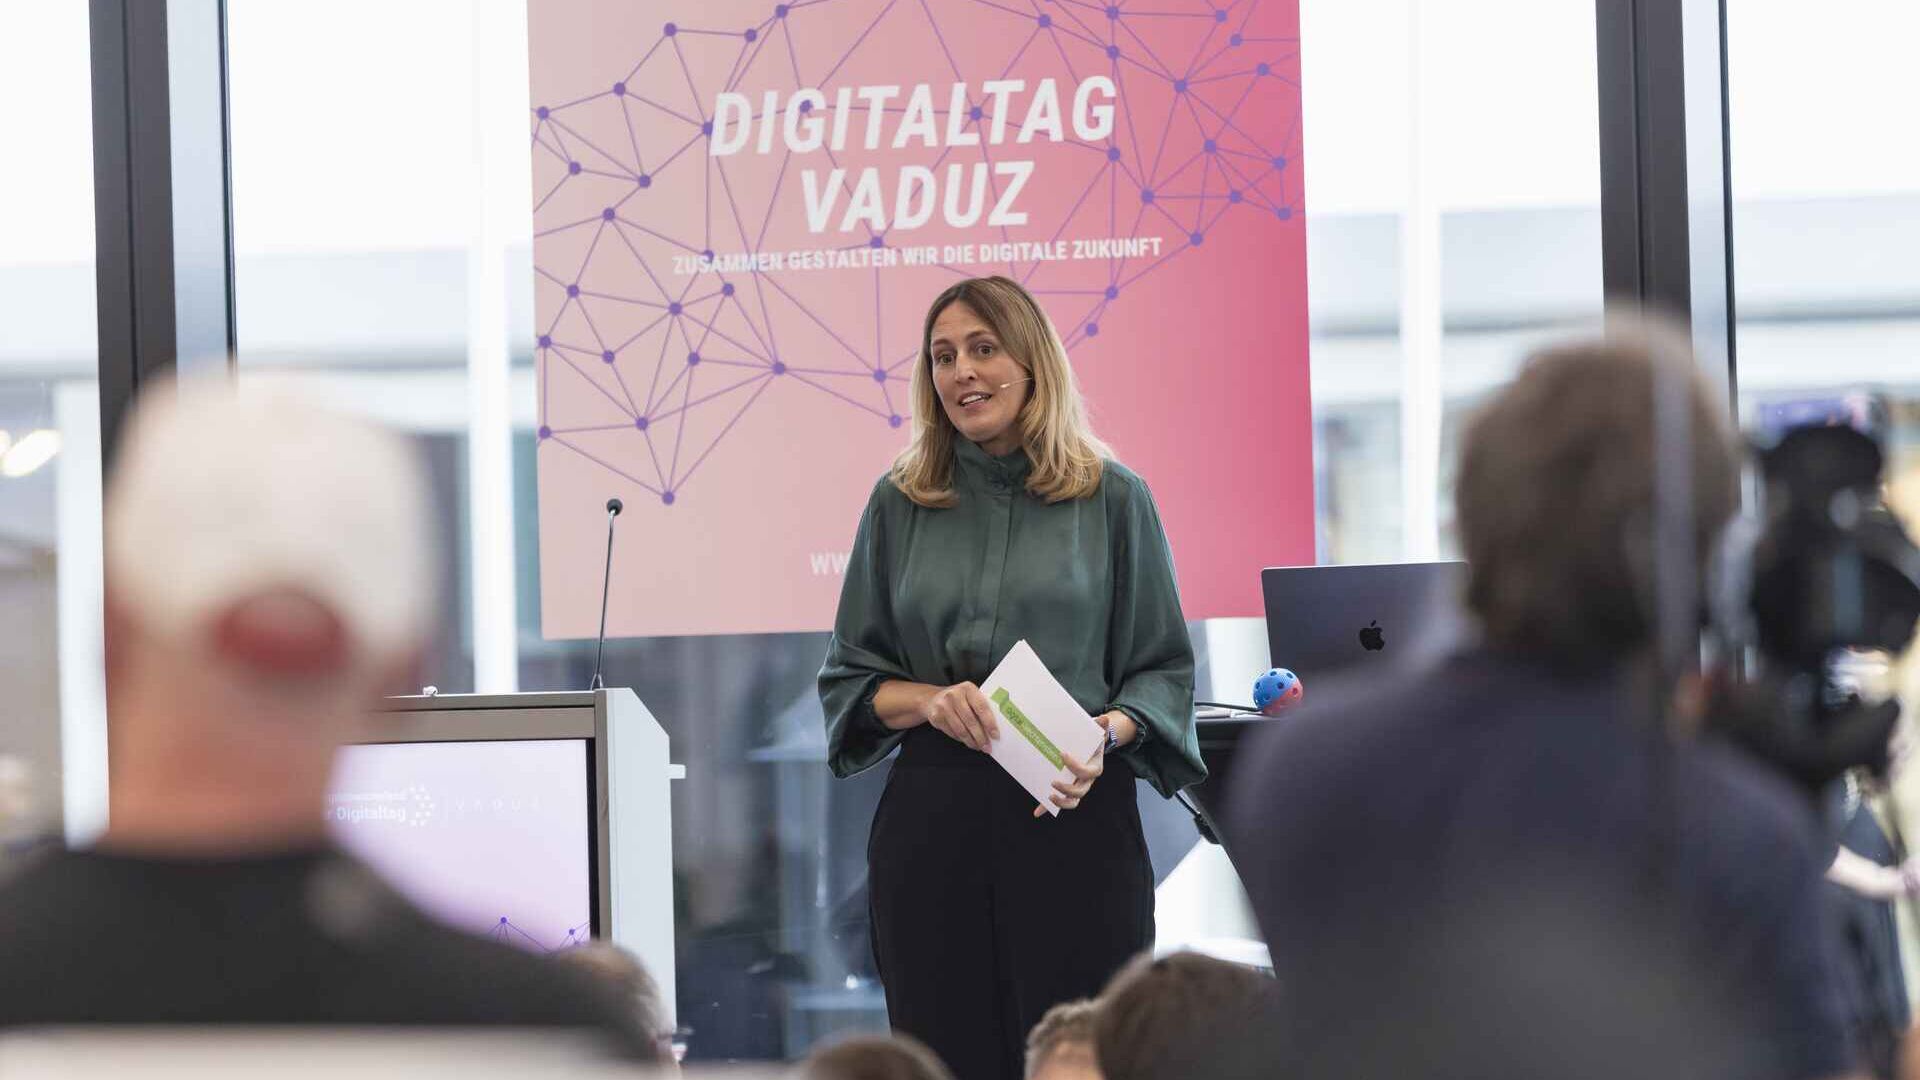 O "Digitaltag Vaduz" foi recebido pelo Kunstmuseum da capital do Principado de Liechtenstein no sábado, 15 de outubro de 2022